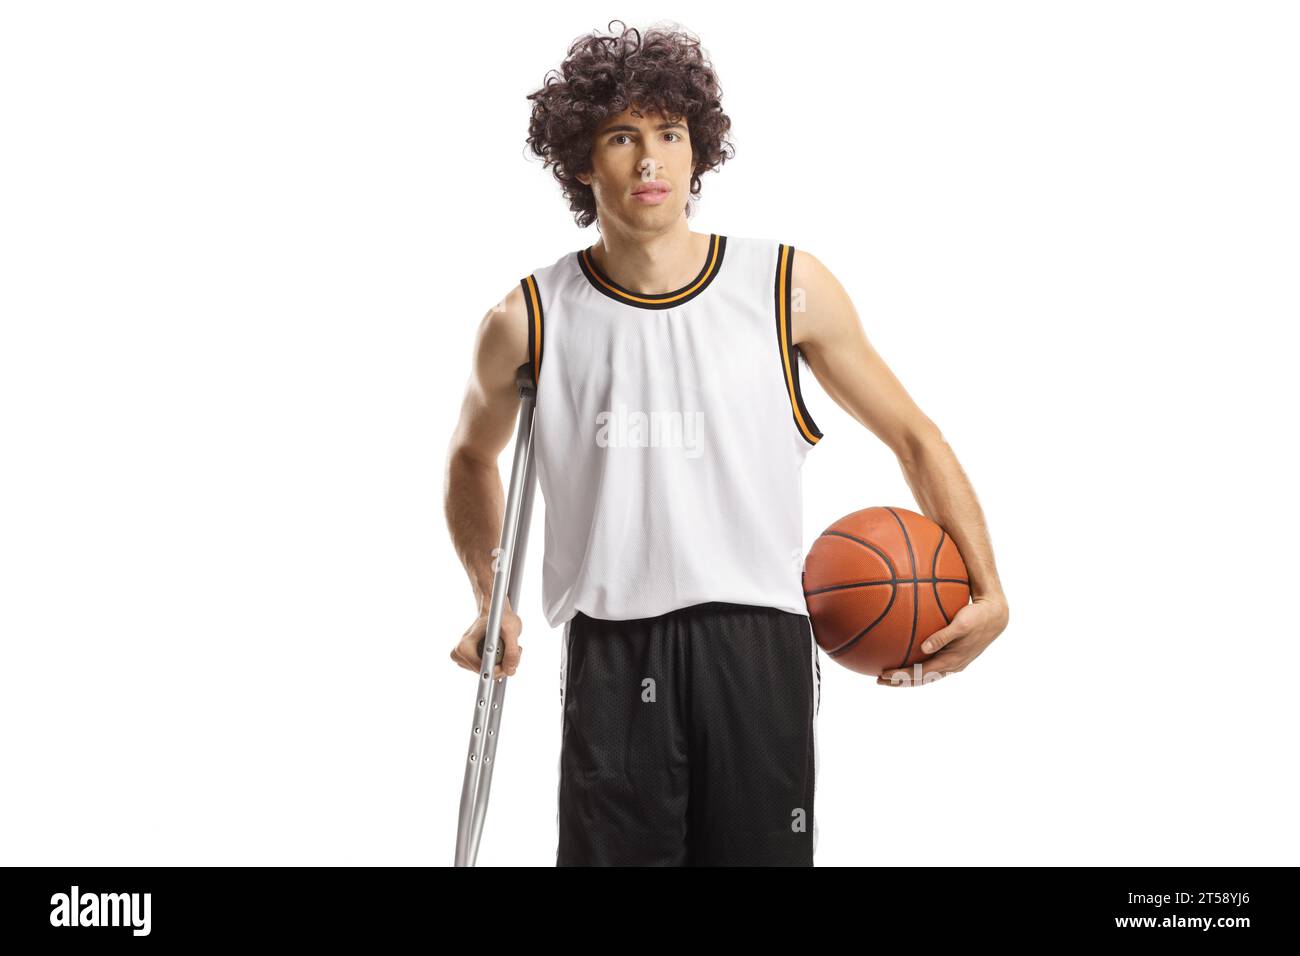 Joueur de basket tenant une balle et s'appuyant sur une béquille isolée sur fond blanc Banque D'Images